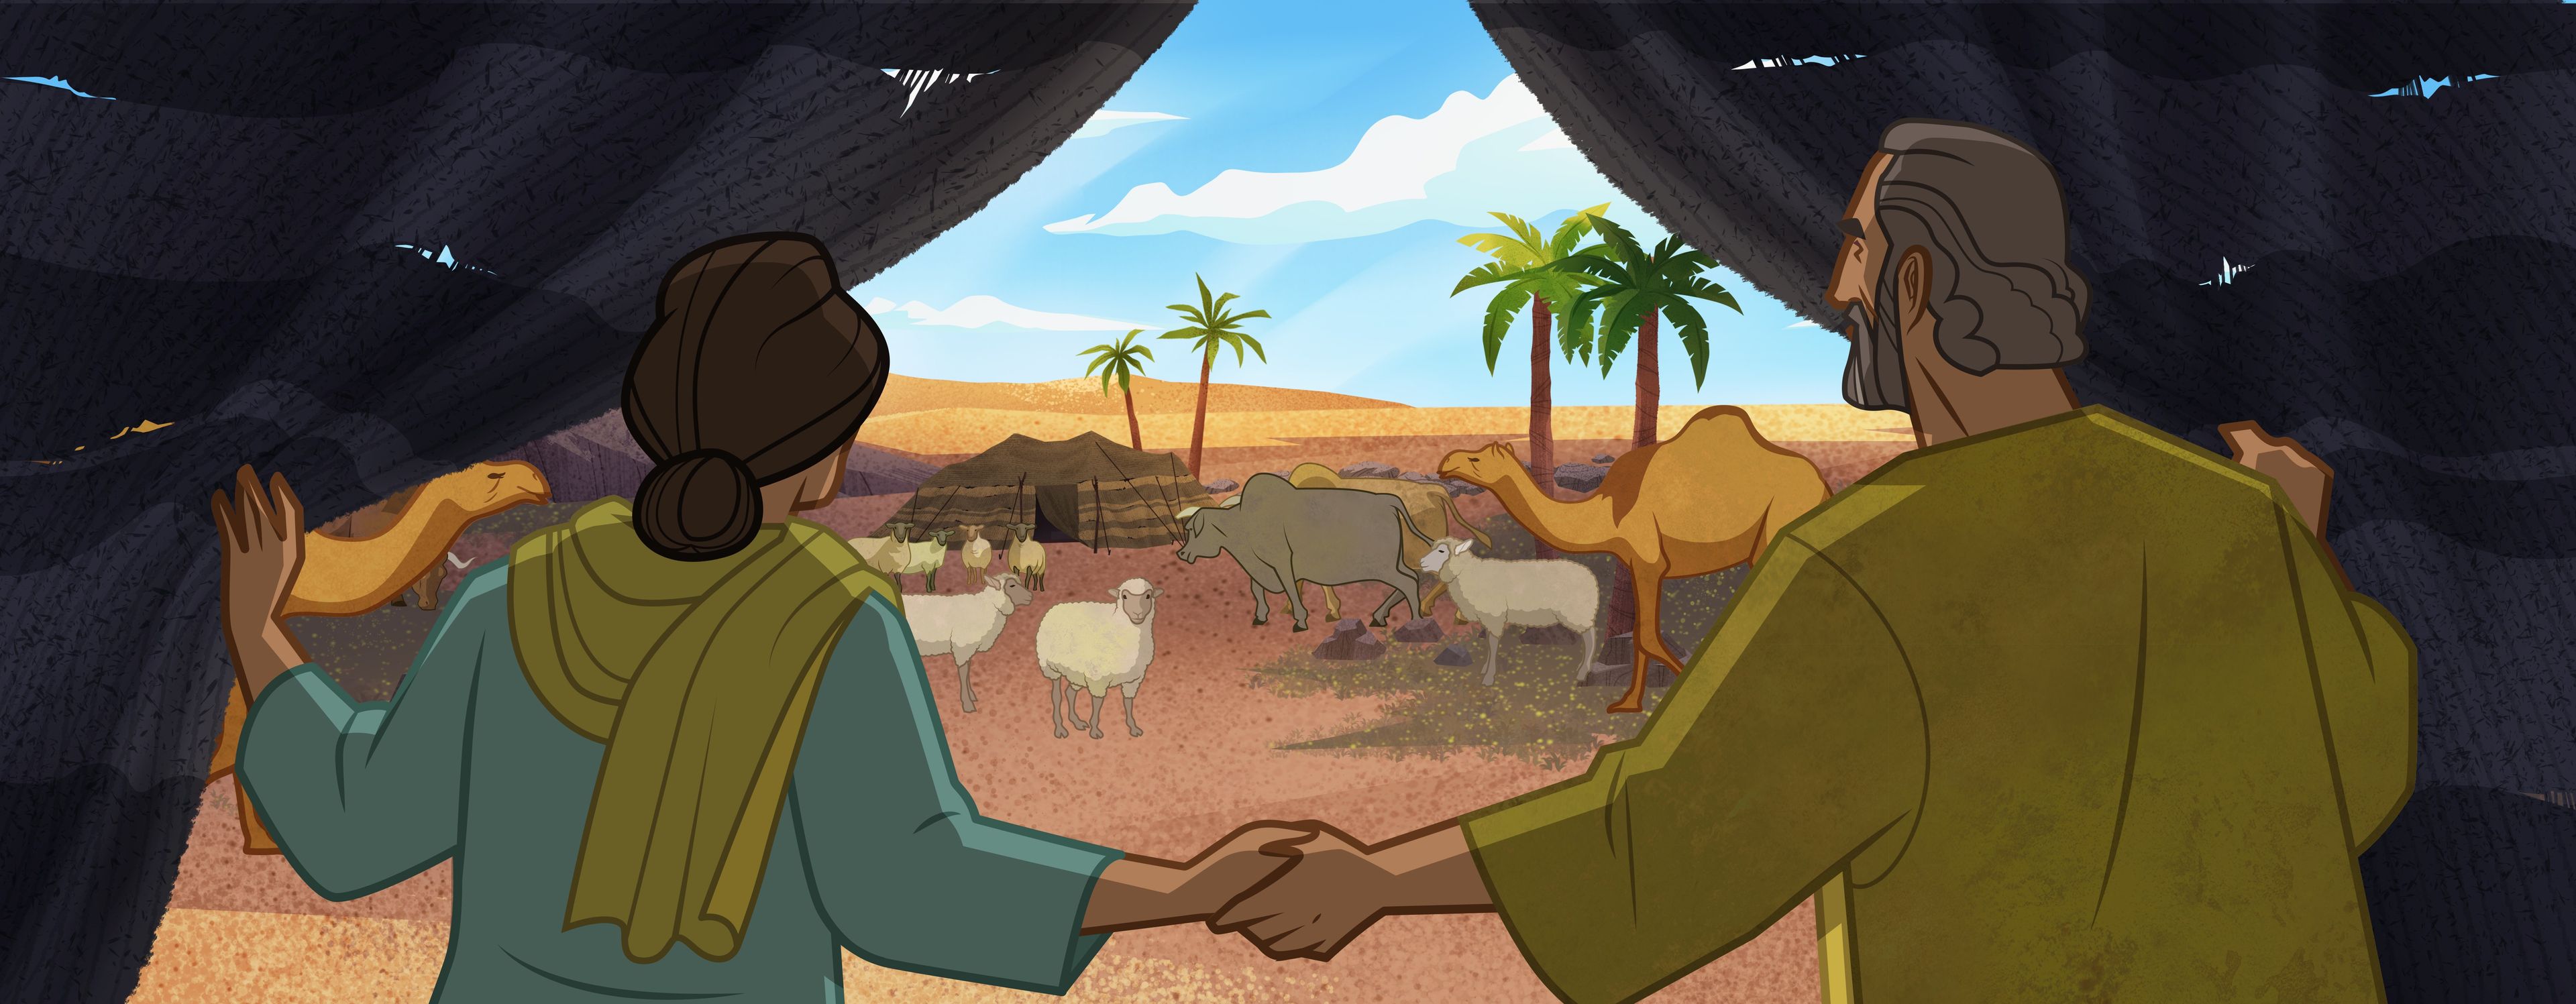 Illustration von Abraham, Sara und ihrem Vieh 
Genesis 13:1-4,12; Abraham 2:19